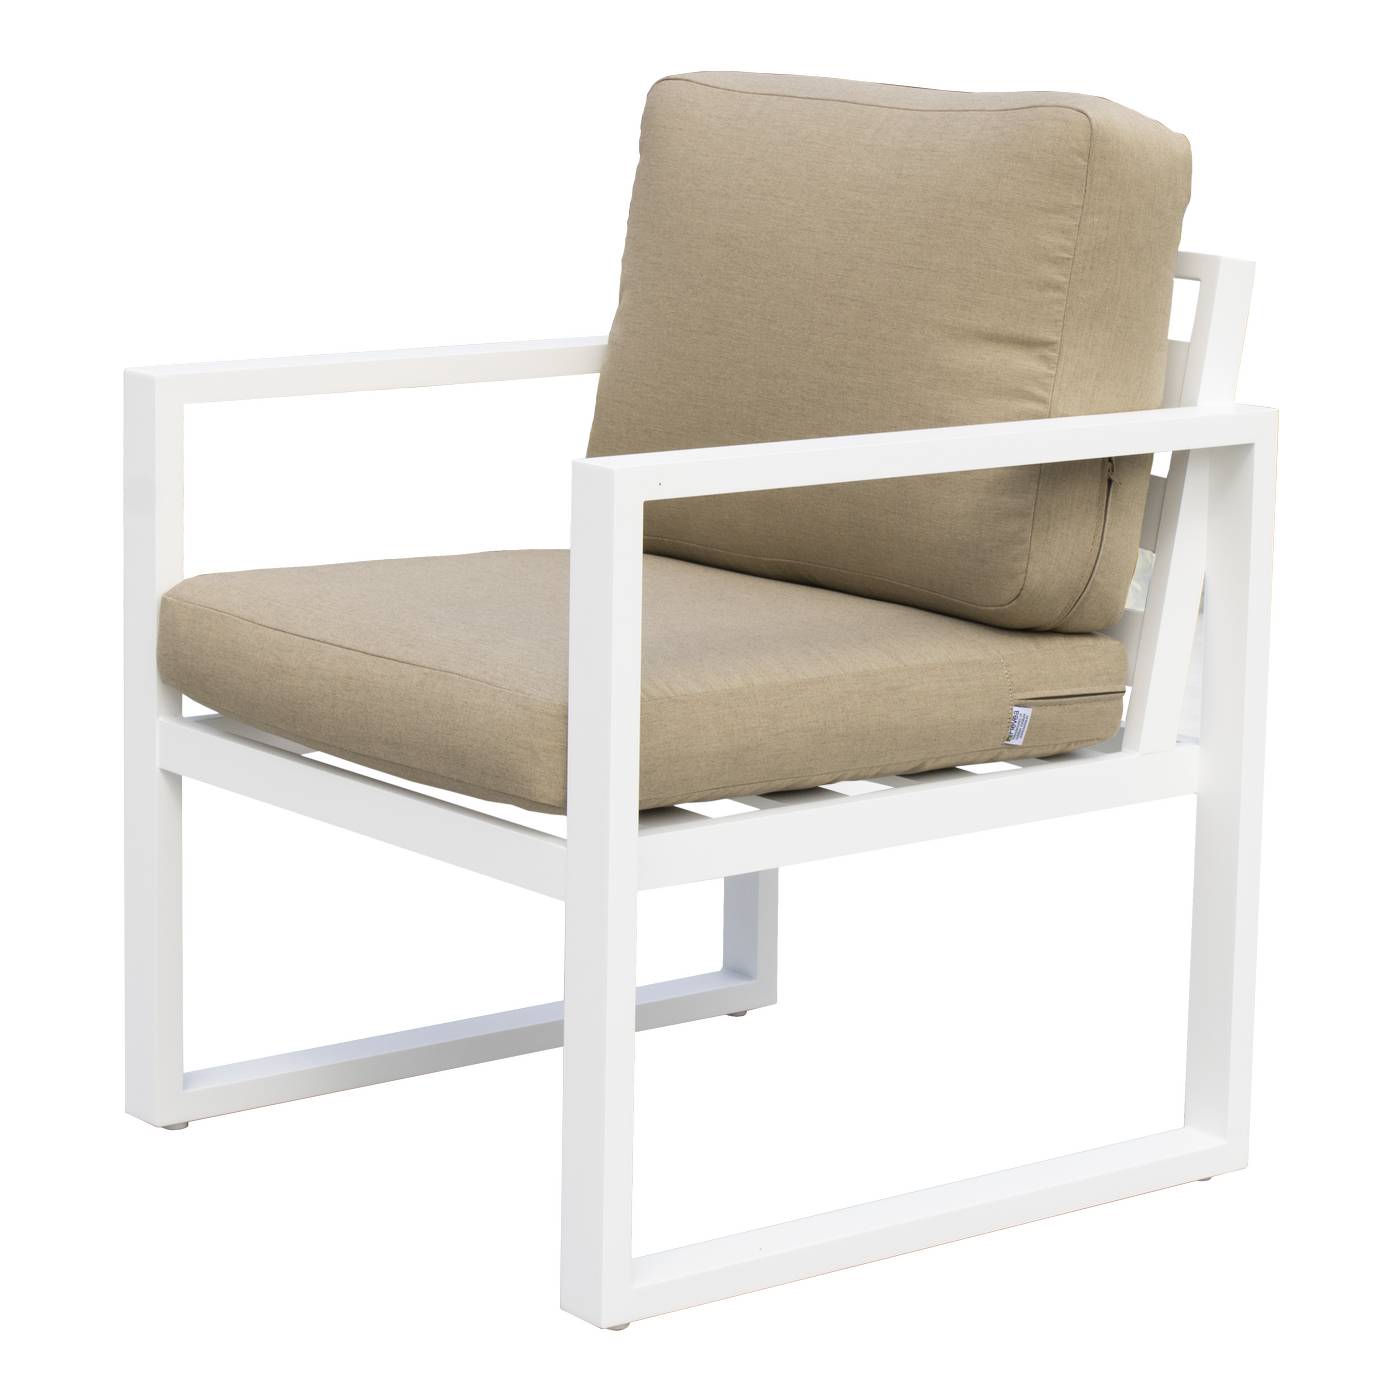 Set Aluminio Fenix-8 - Conjunto aluminio: 1 sofá 3 plazas + 2 sillones + 1 mesa de centro. Disponible en cinco colores diferentes.